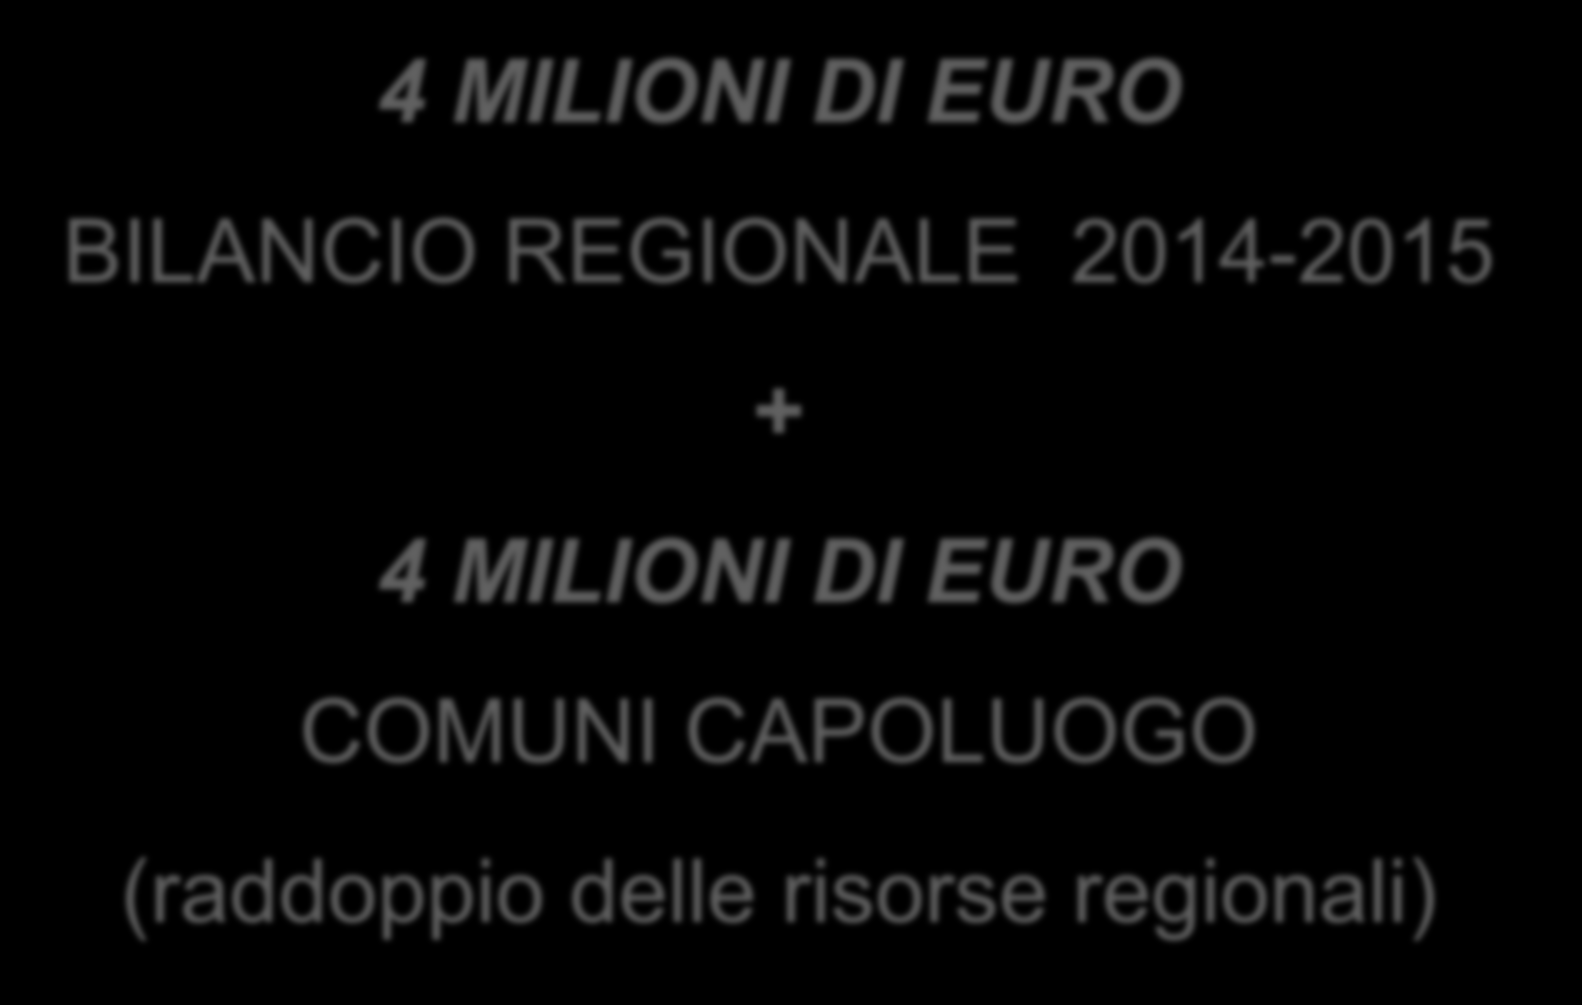 1. Risorse 4 MILIONI DI EURO BILANCIO REGIONALE 2014-2015 + 4